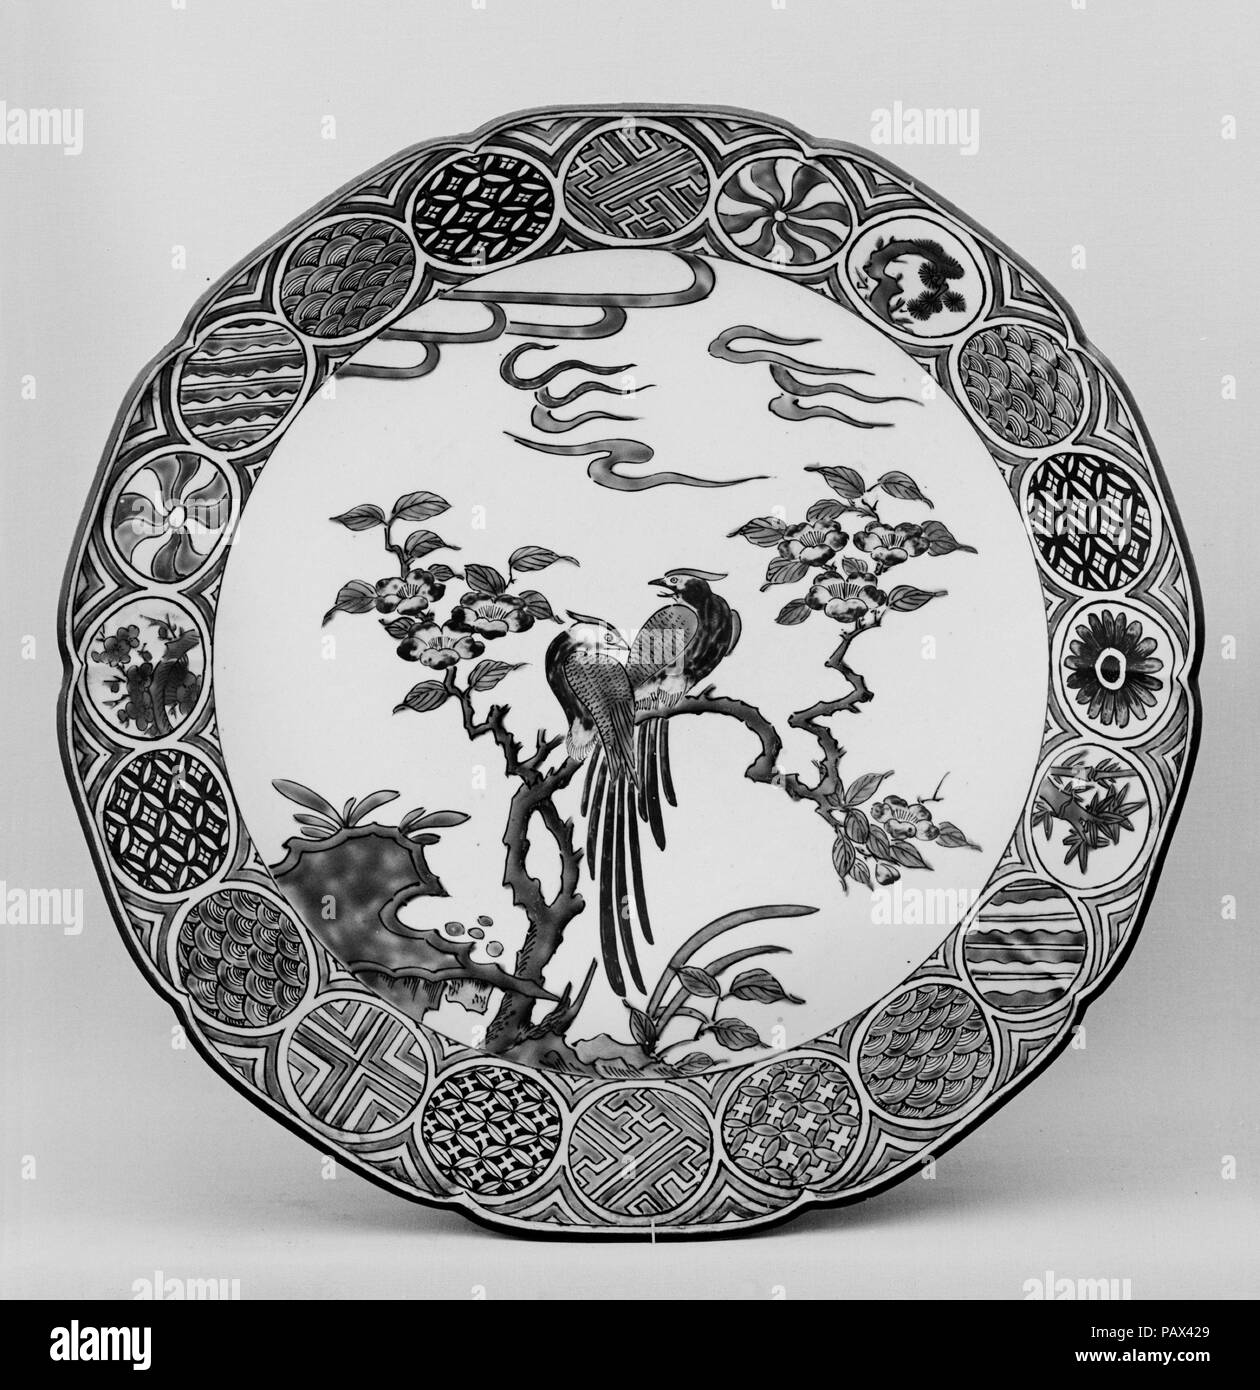 Piastra. Cultura: il Giappone. Dimensioni: diam. 12 3/4 in. (32,4 cm). Data: del XIX secolo. Museo: Metropolitan Museum of Art di New York, Stati Uniti d'America. Foto Stock